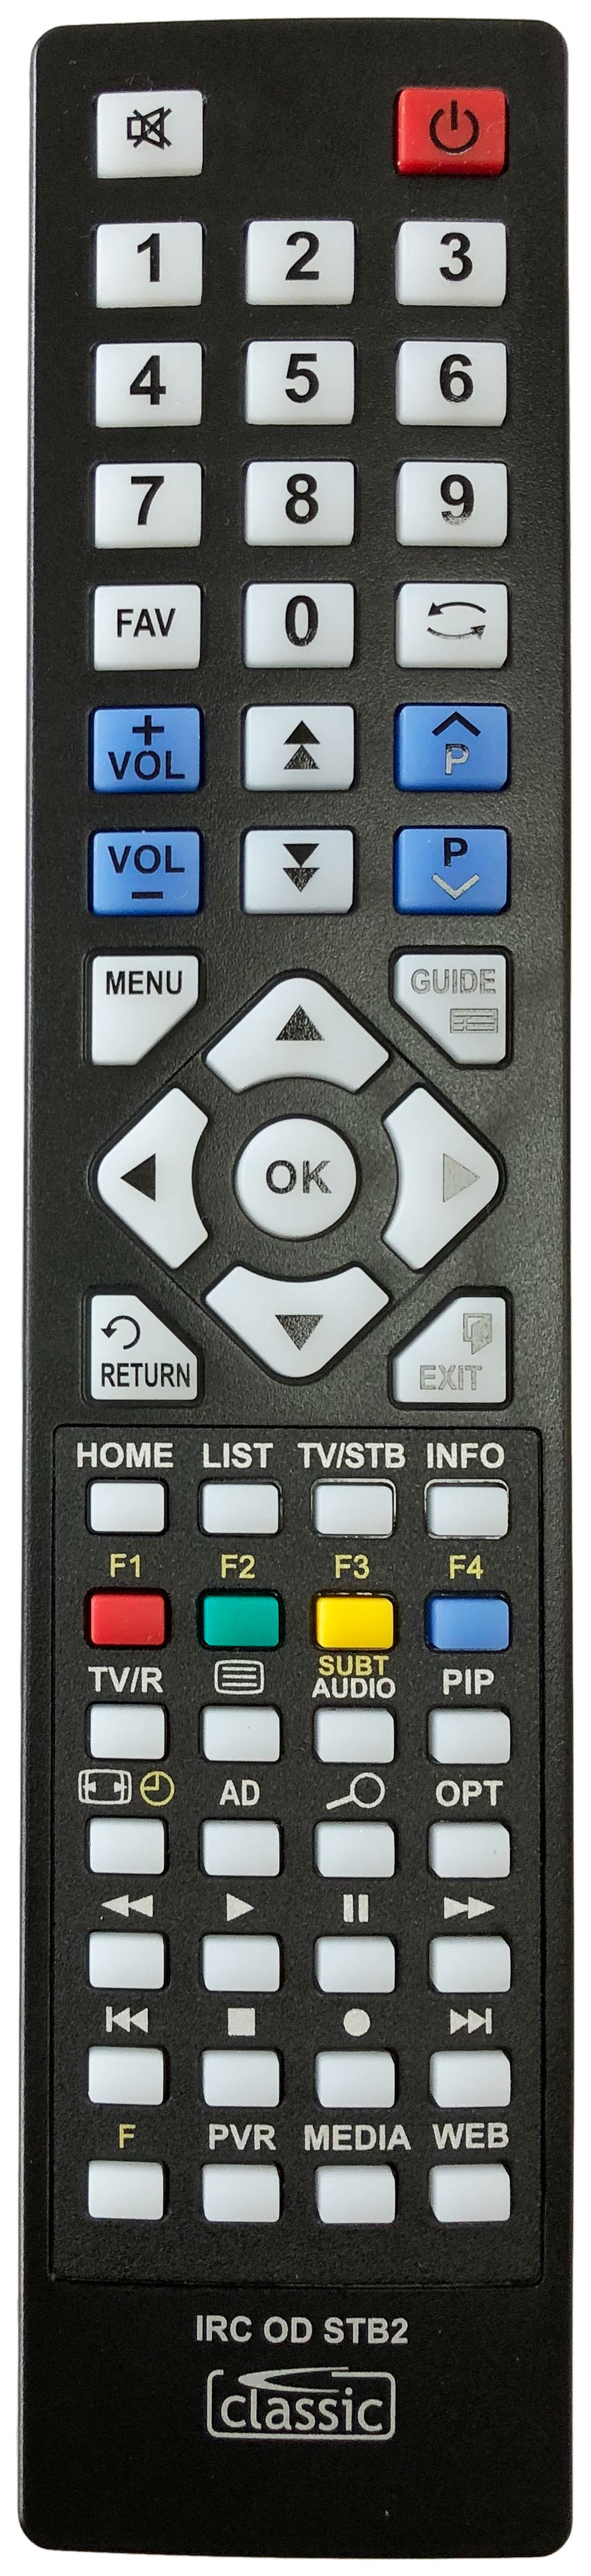 TRIAX SR 110 Remote Control